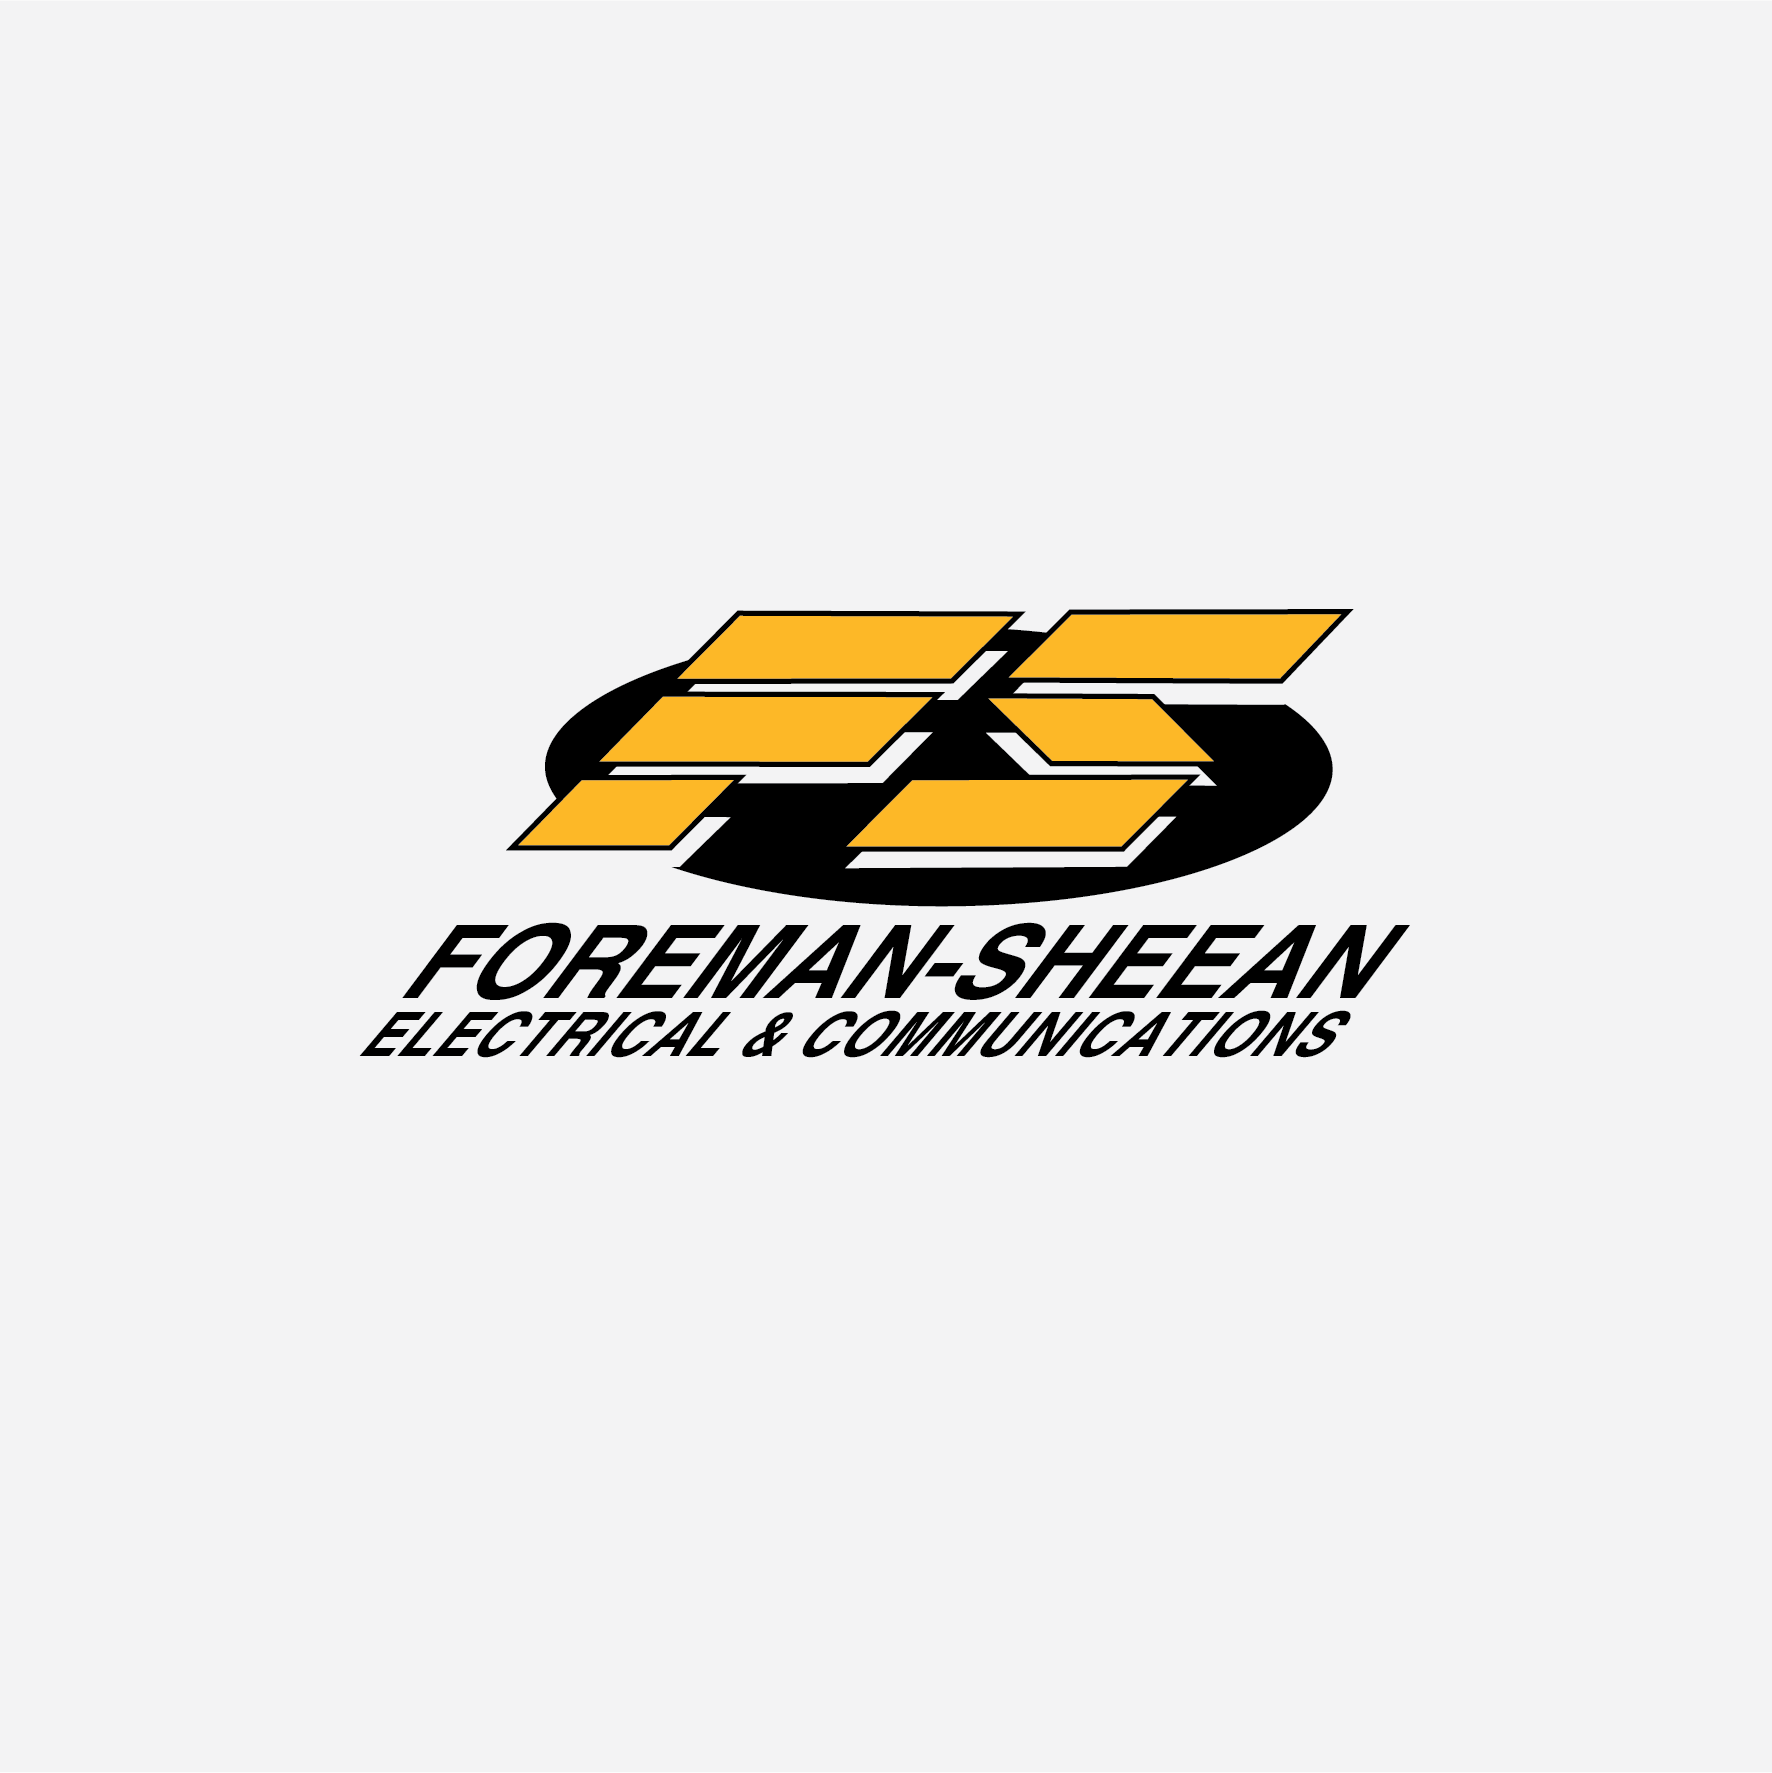 Foreman & Sheenan Logo.png